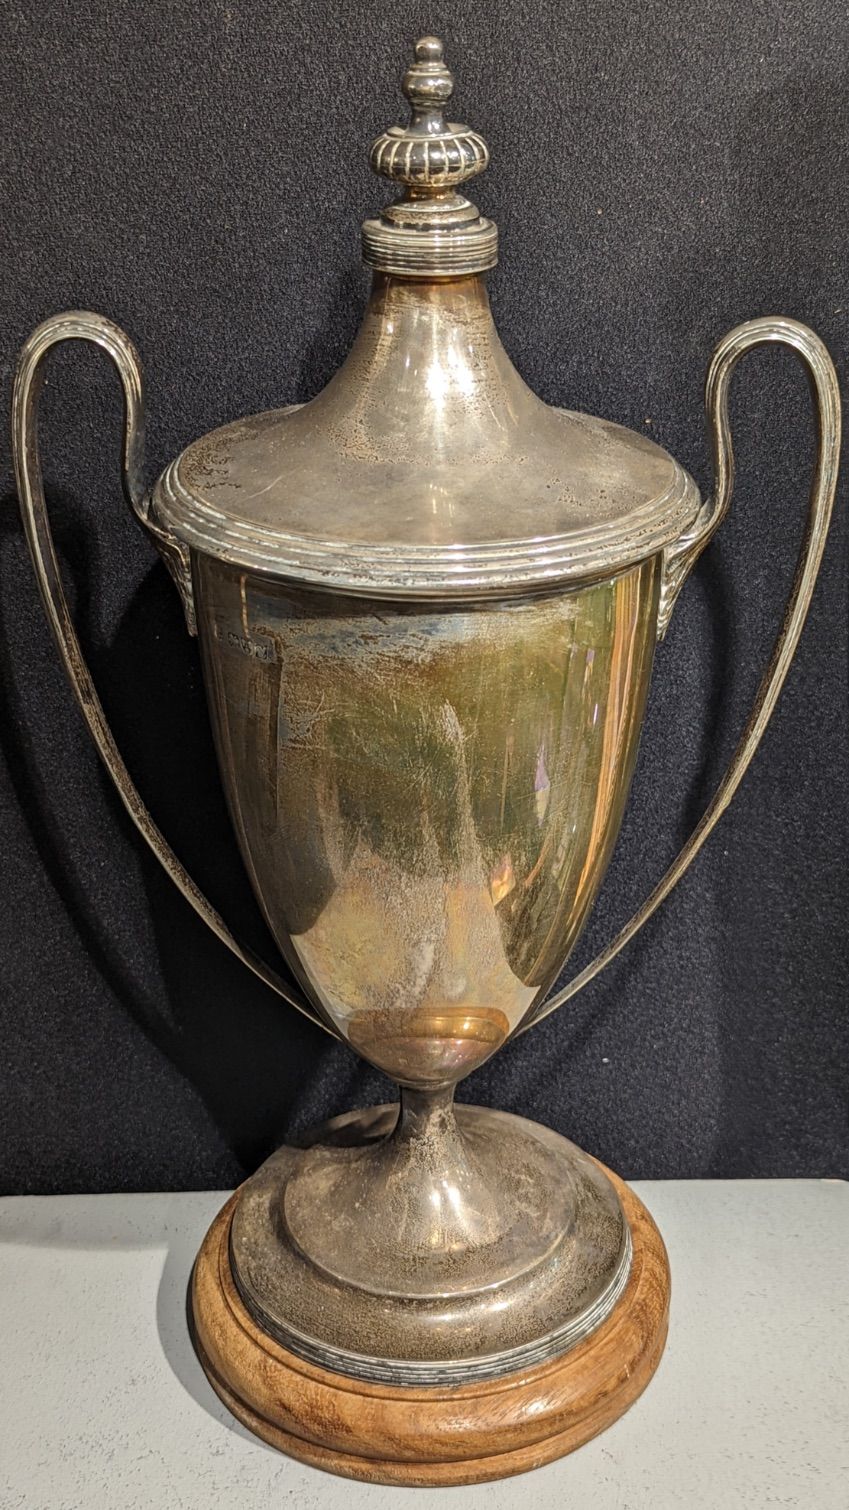 BARKER 20世纪初的大型银质奖杯，有切斯特的印记，1920年，制作者是巴克兄弟，凸起在木质支架上，没有刻字，1220克，高38厘米